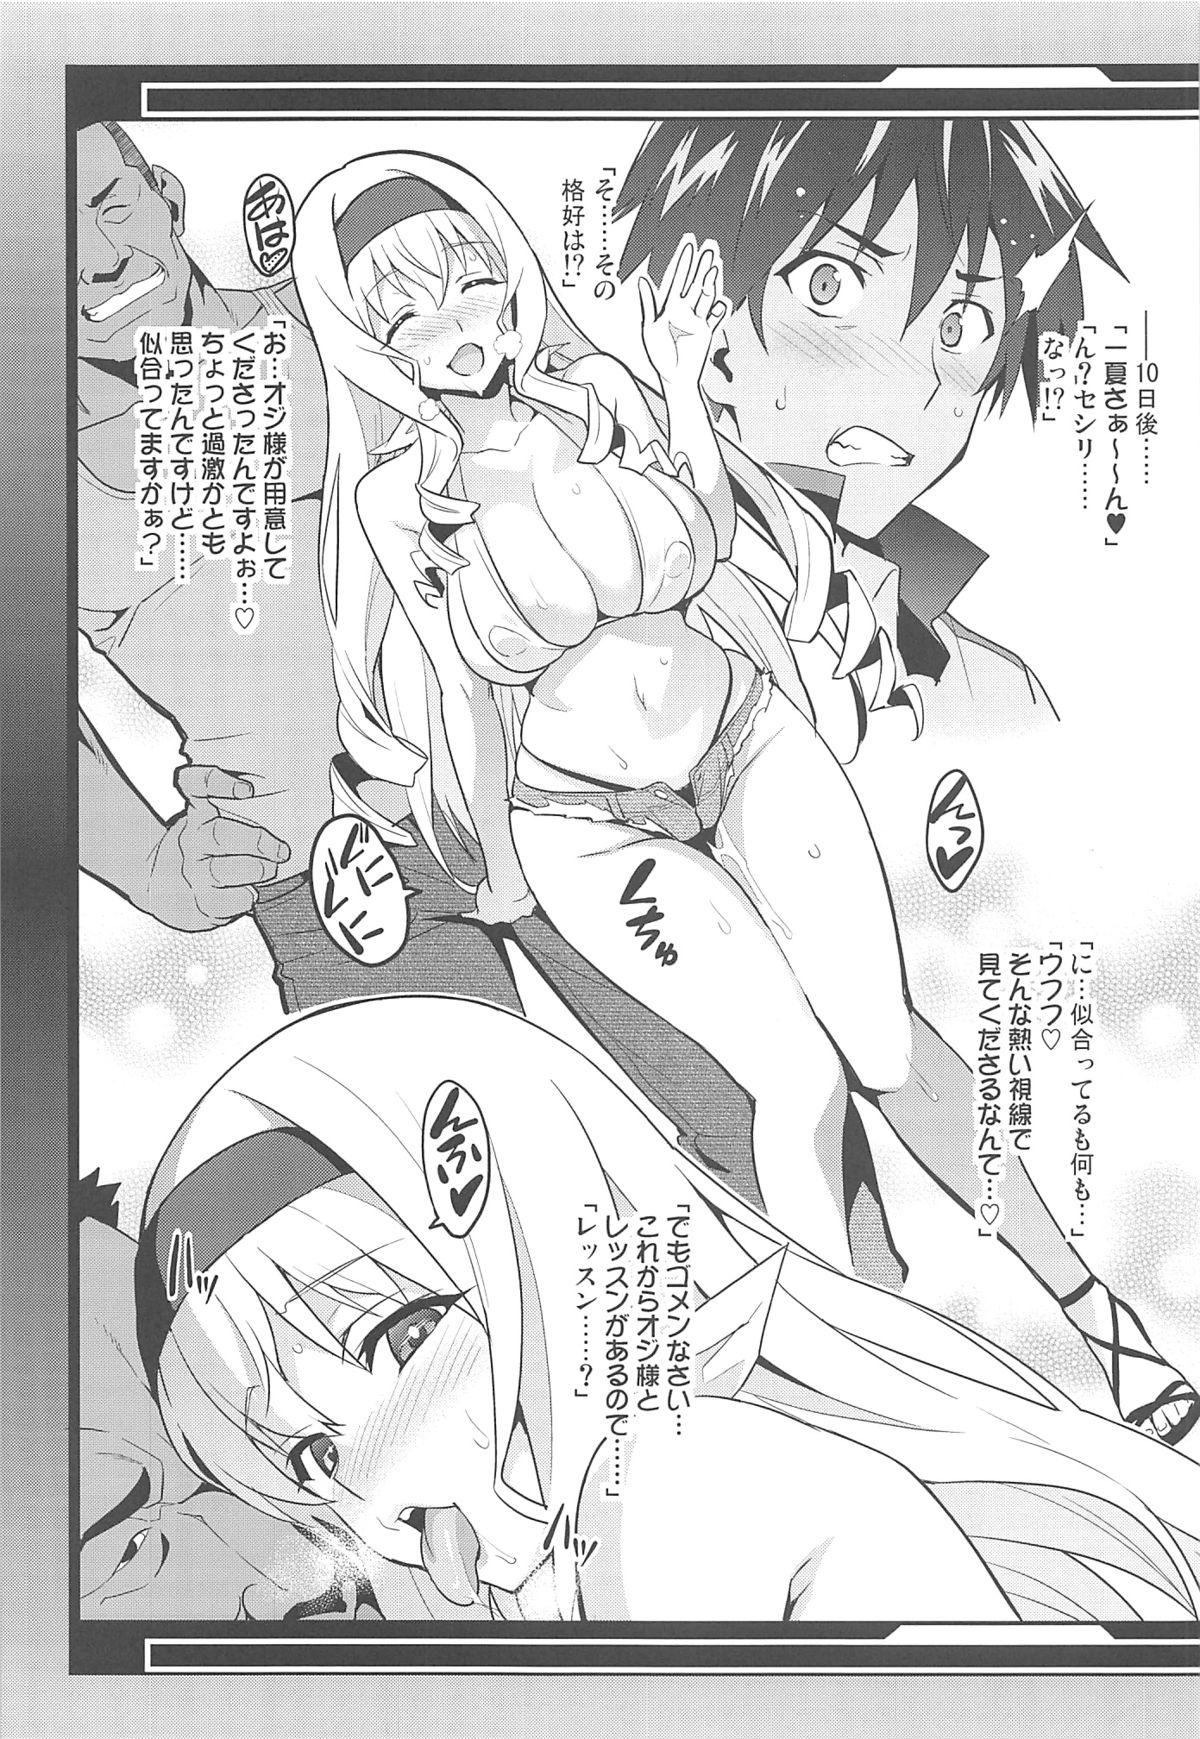 Girl Sucking Dick Sutotama - Infinite stratos Cavalgando - Page 5